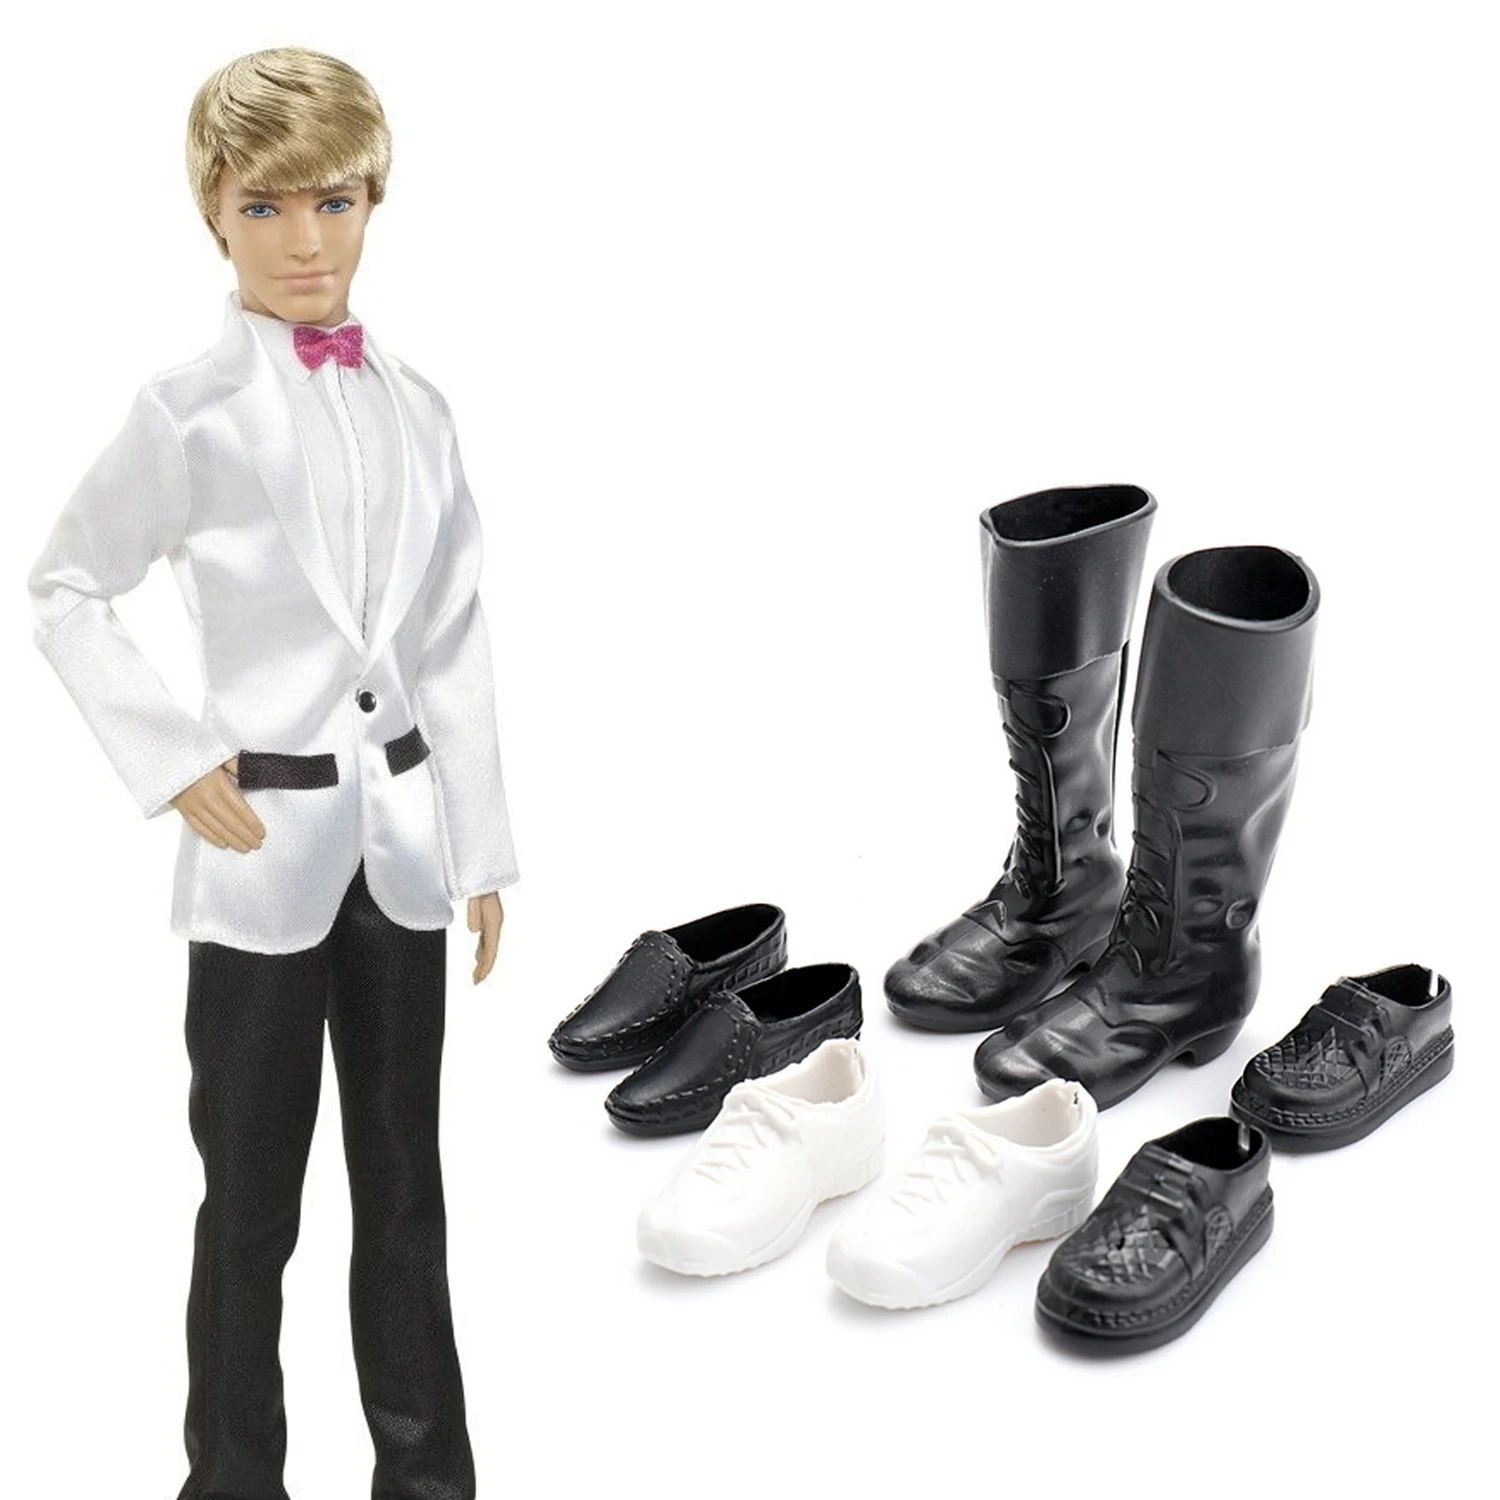 Besegad/4 комплекта, модная повседневная одежда Кен кукольная куртка, штаны, наряды, аксессуары для Барби Куклы Кен, детские подарки на день рождения и Рождество